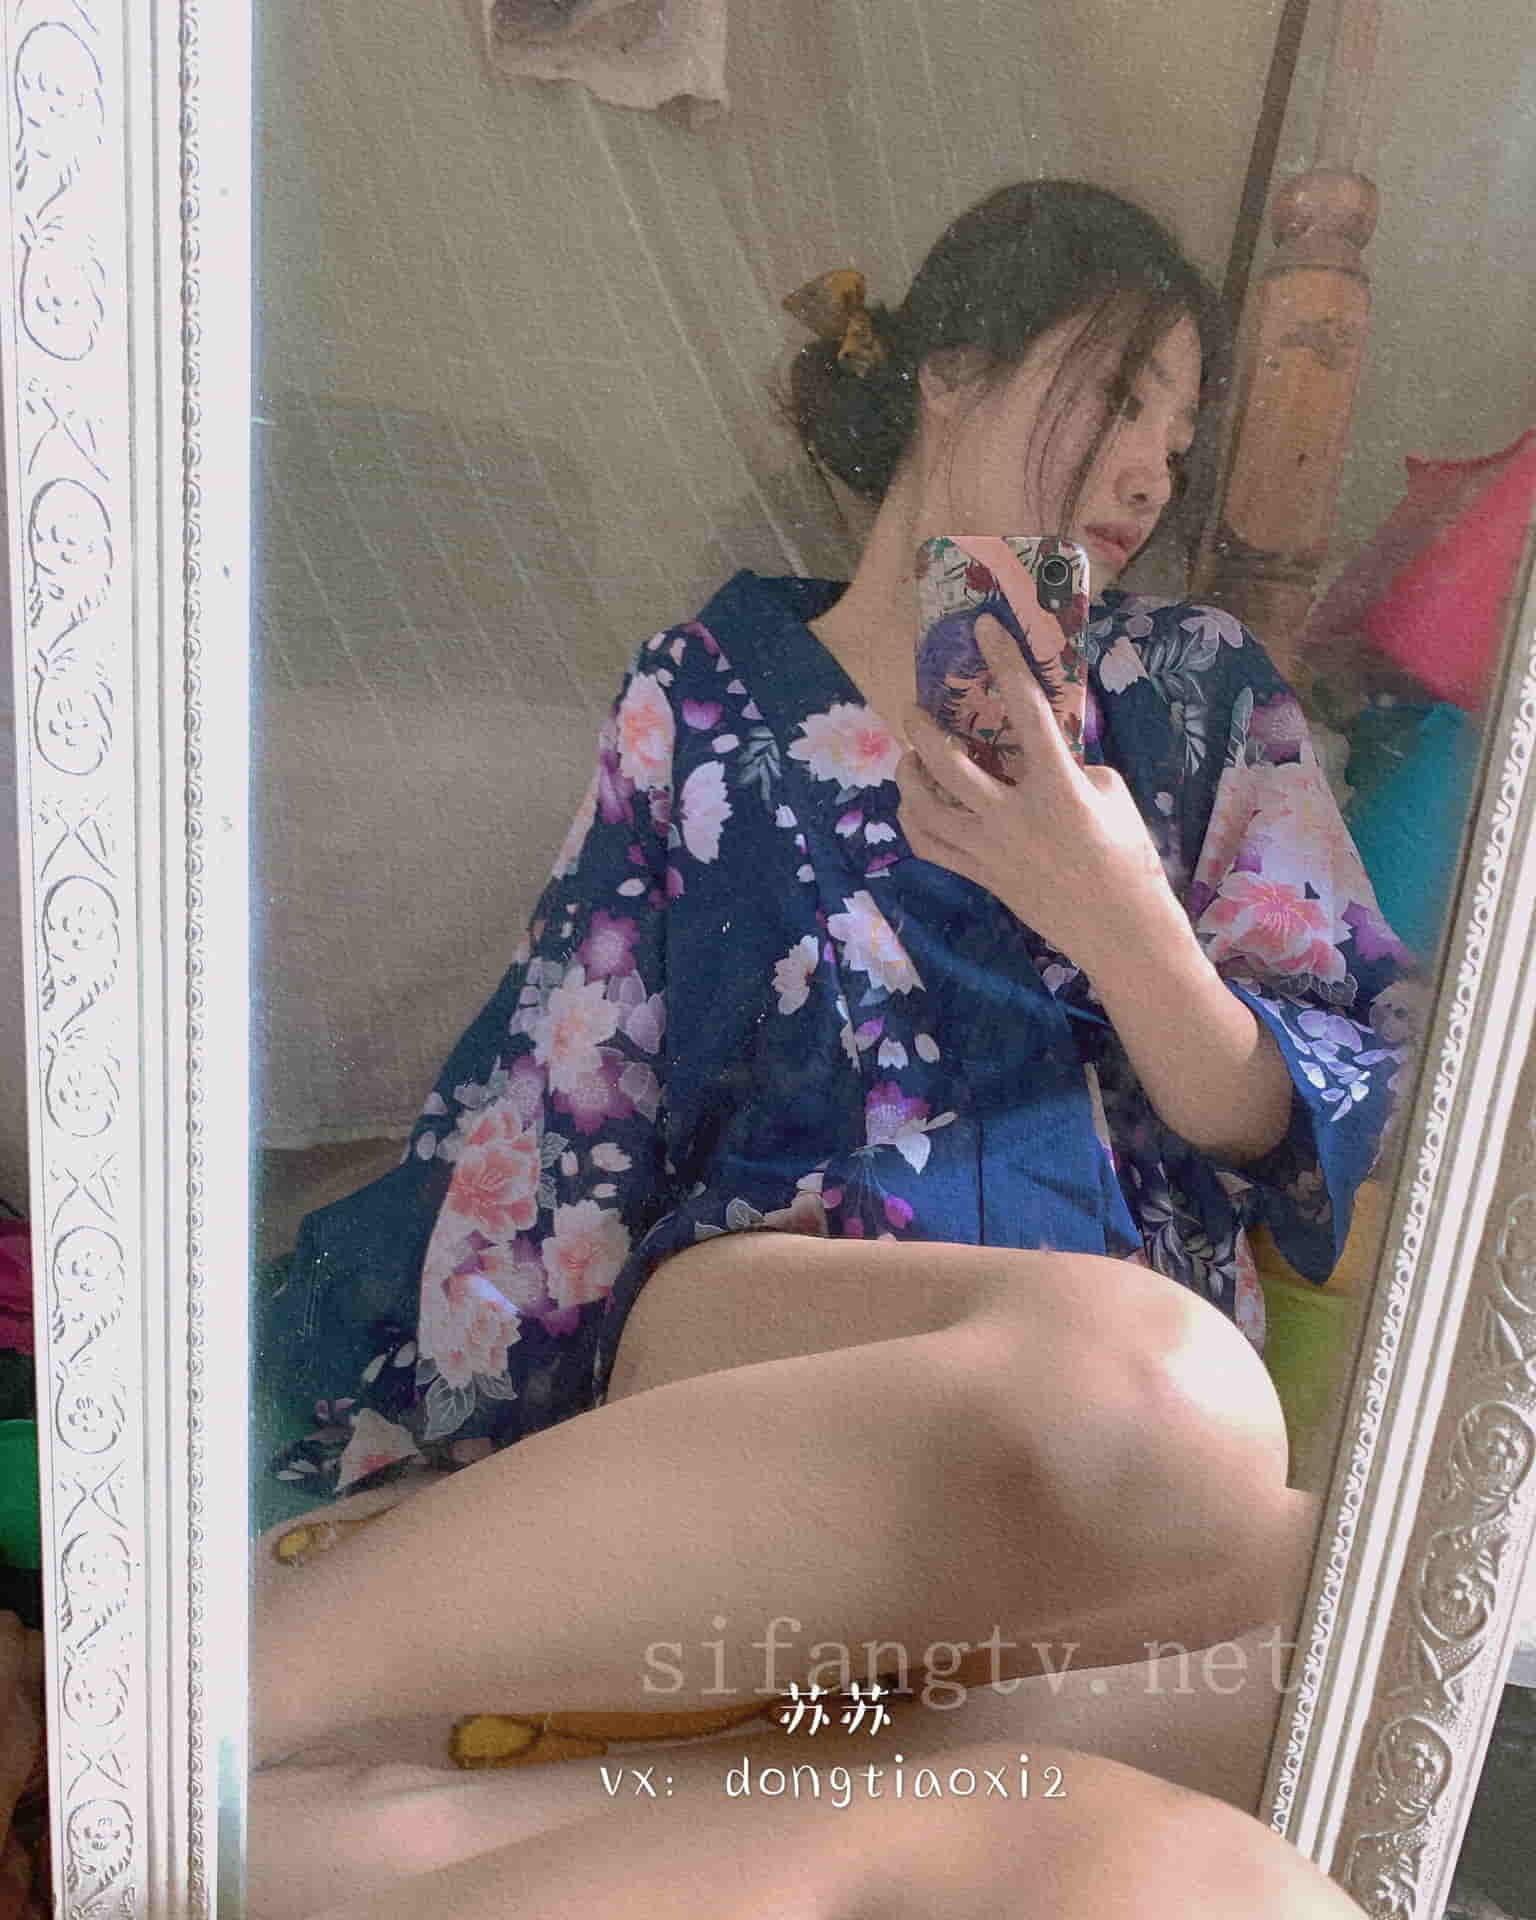 Су Ванъянь — показывает лицо в кимоно